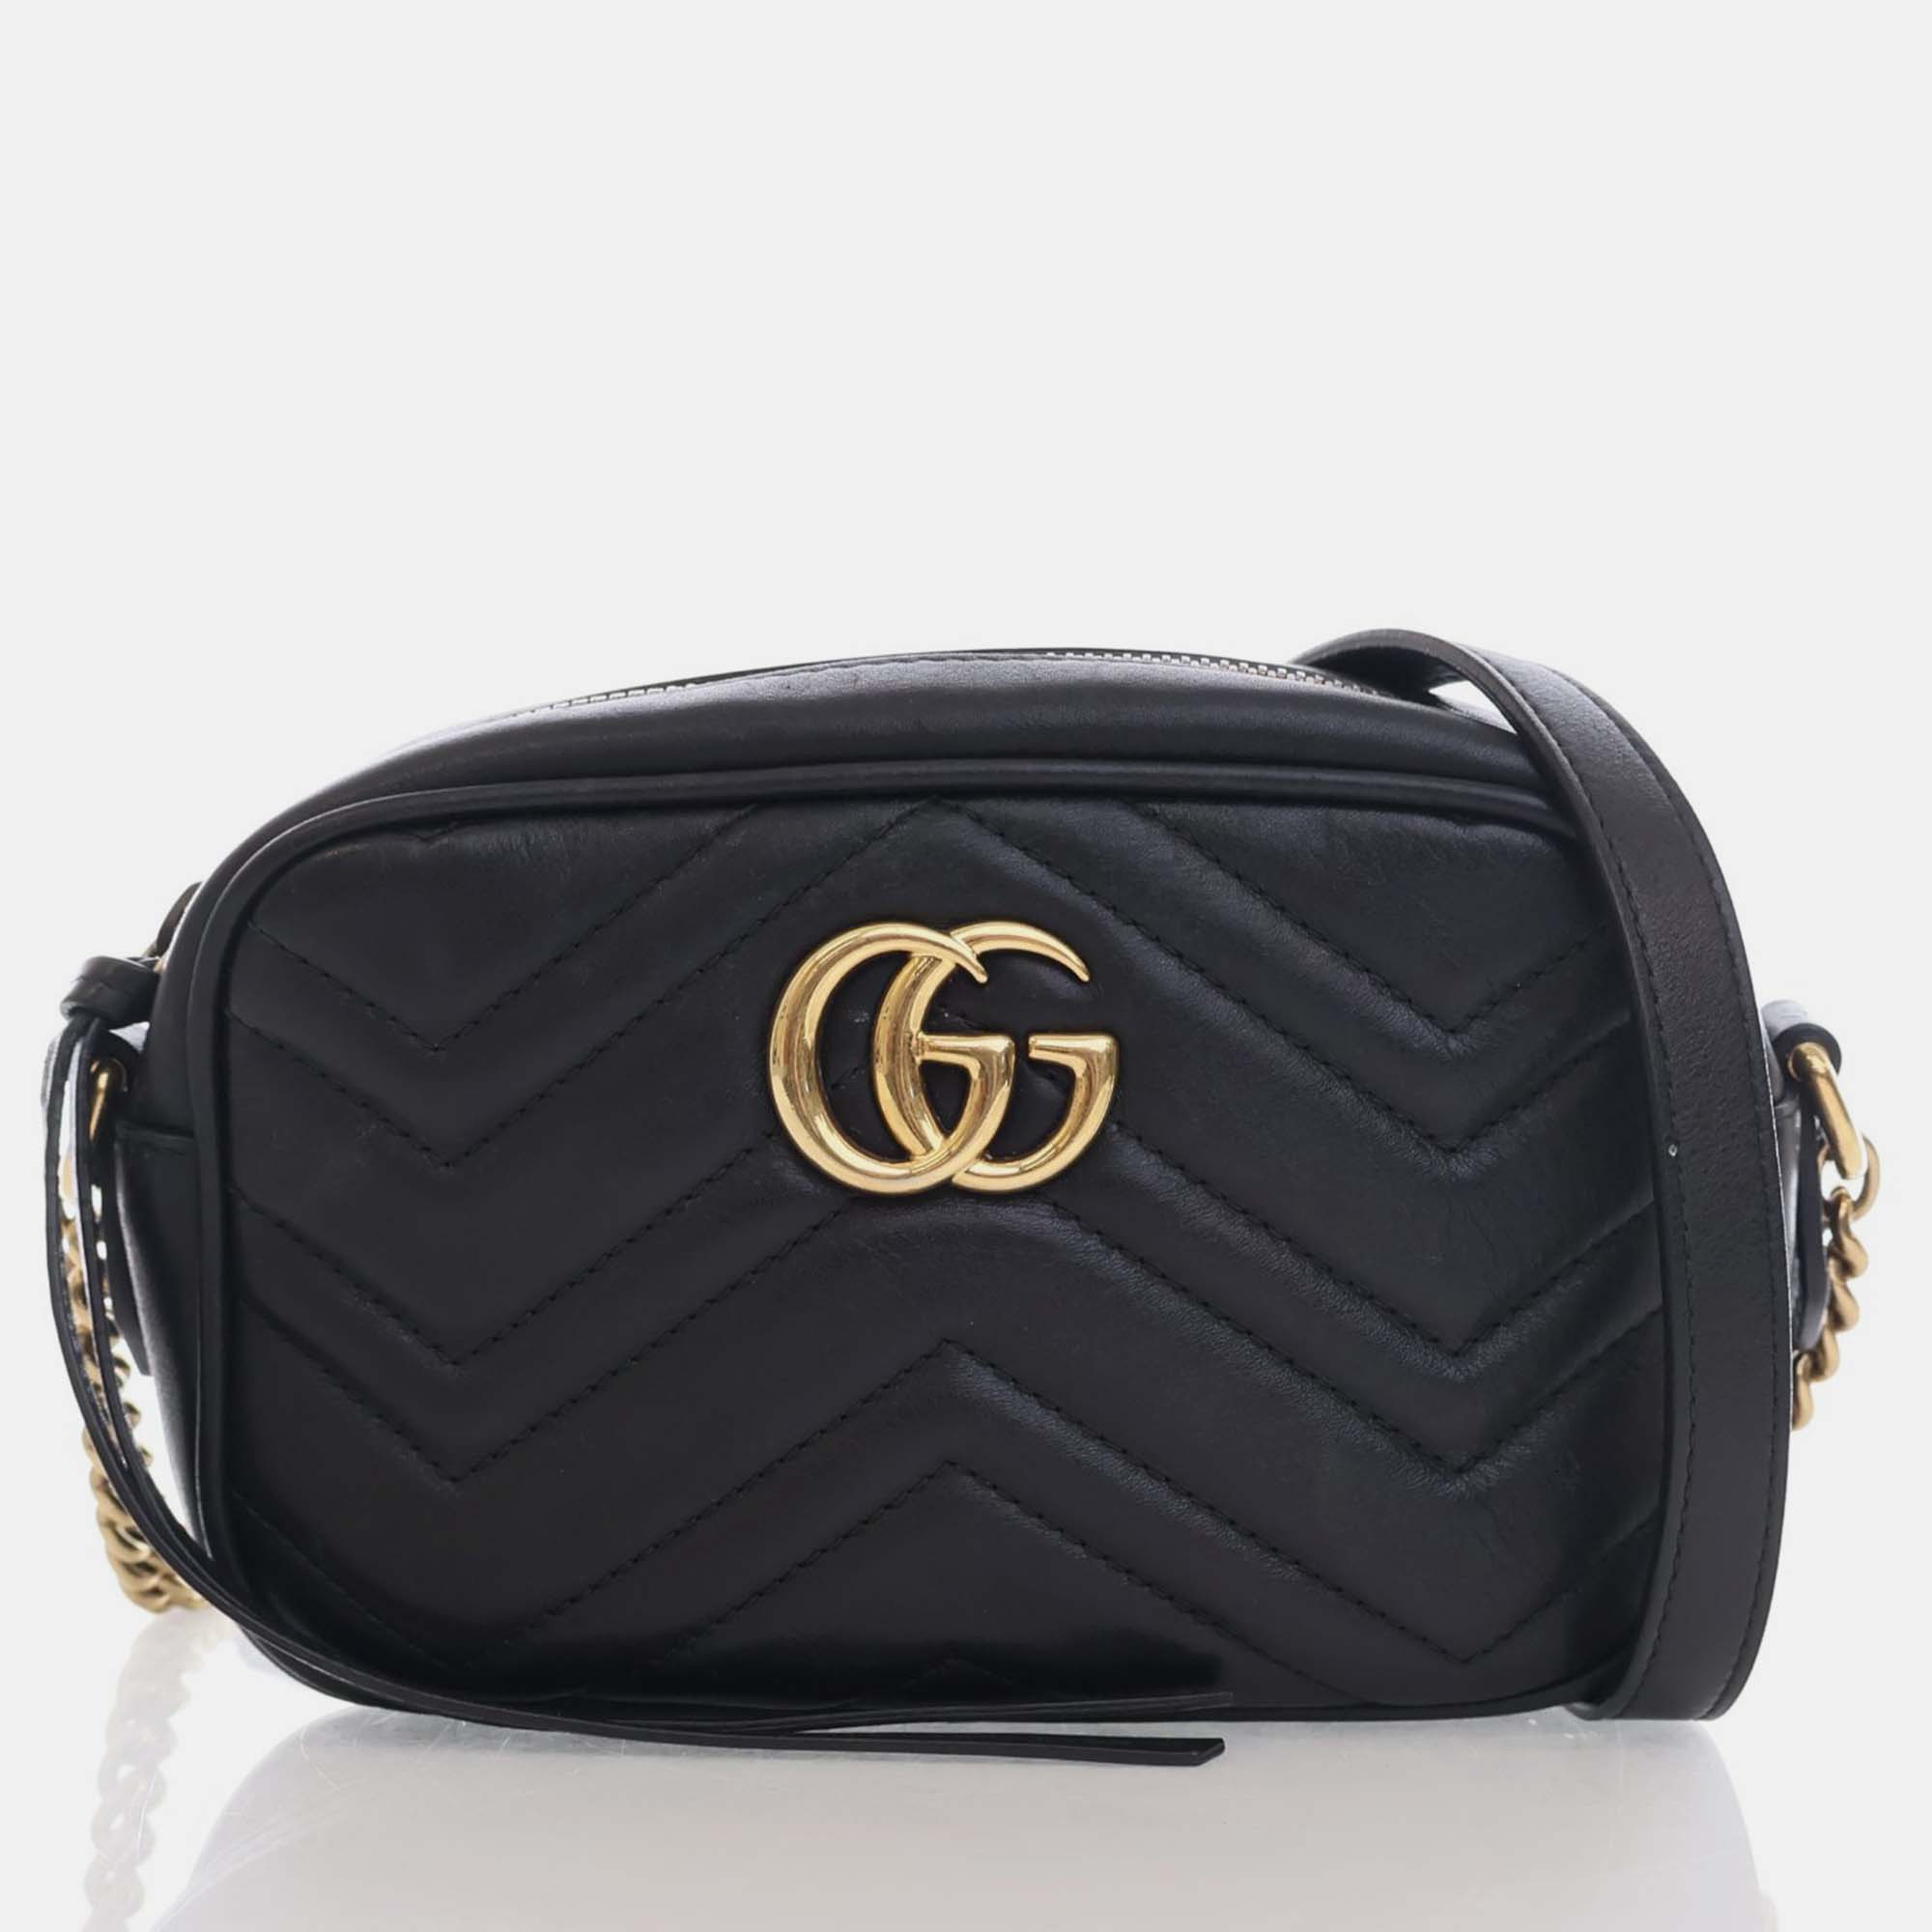 Gucci black leather  gg marmont shoulder bag